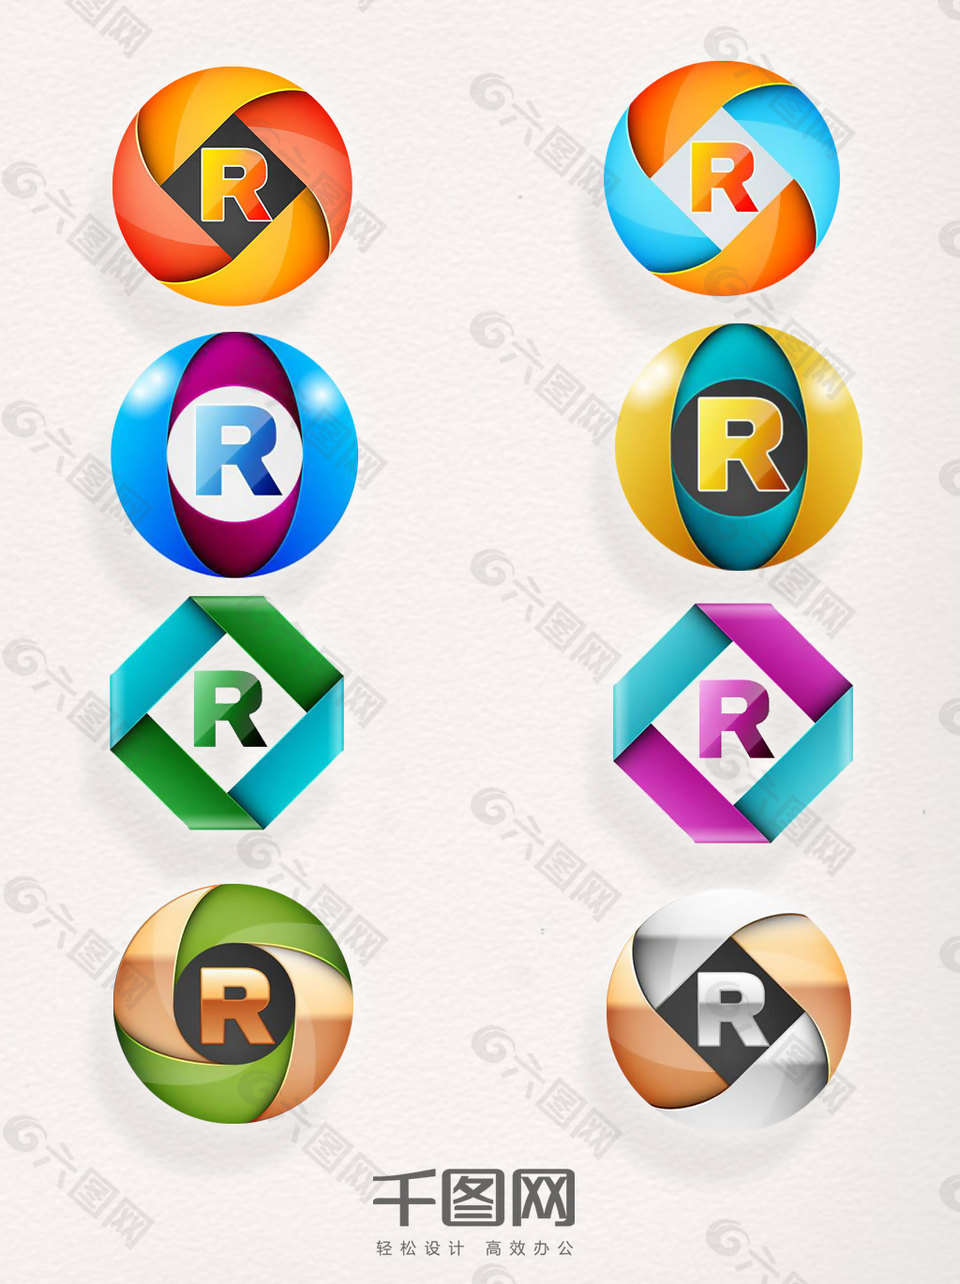 商标R素材创意字母元素图标设计图案集合